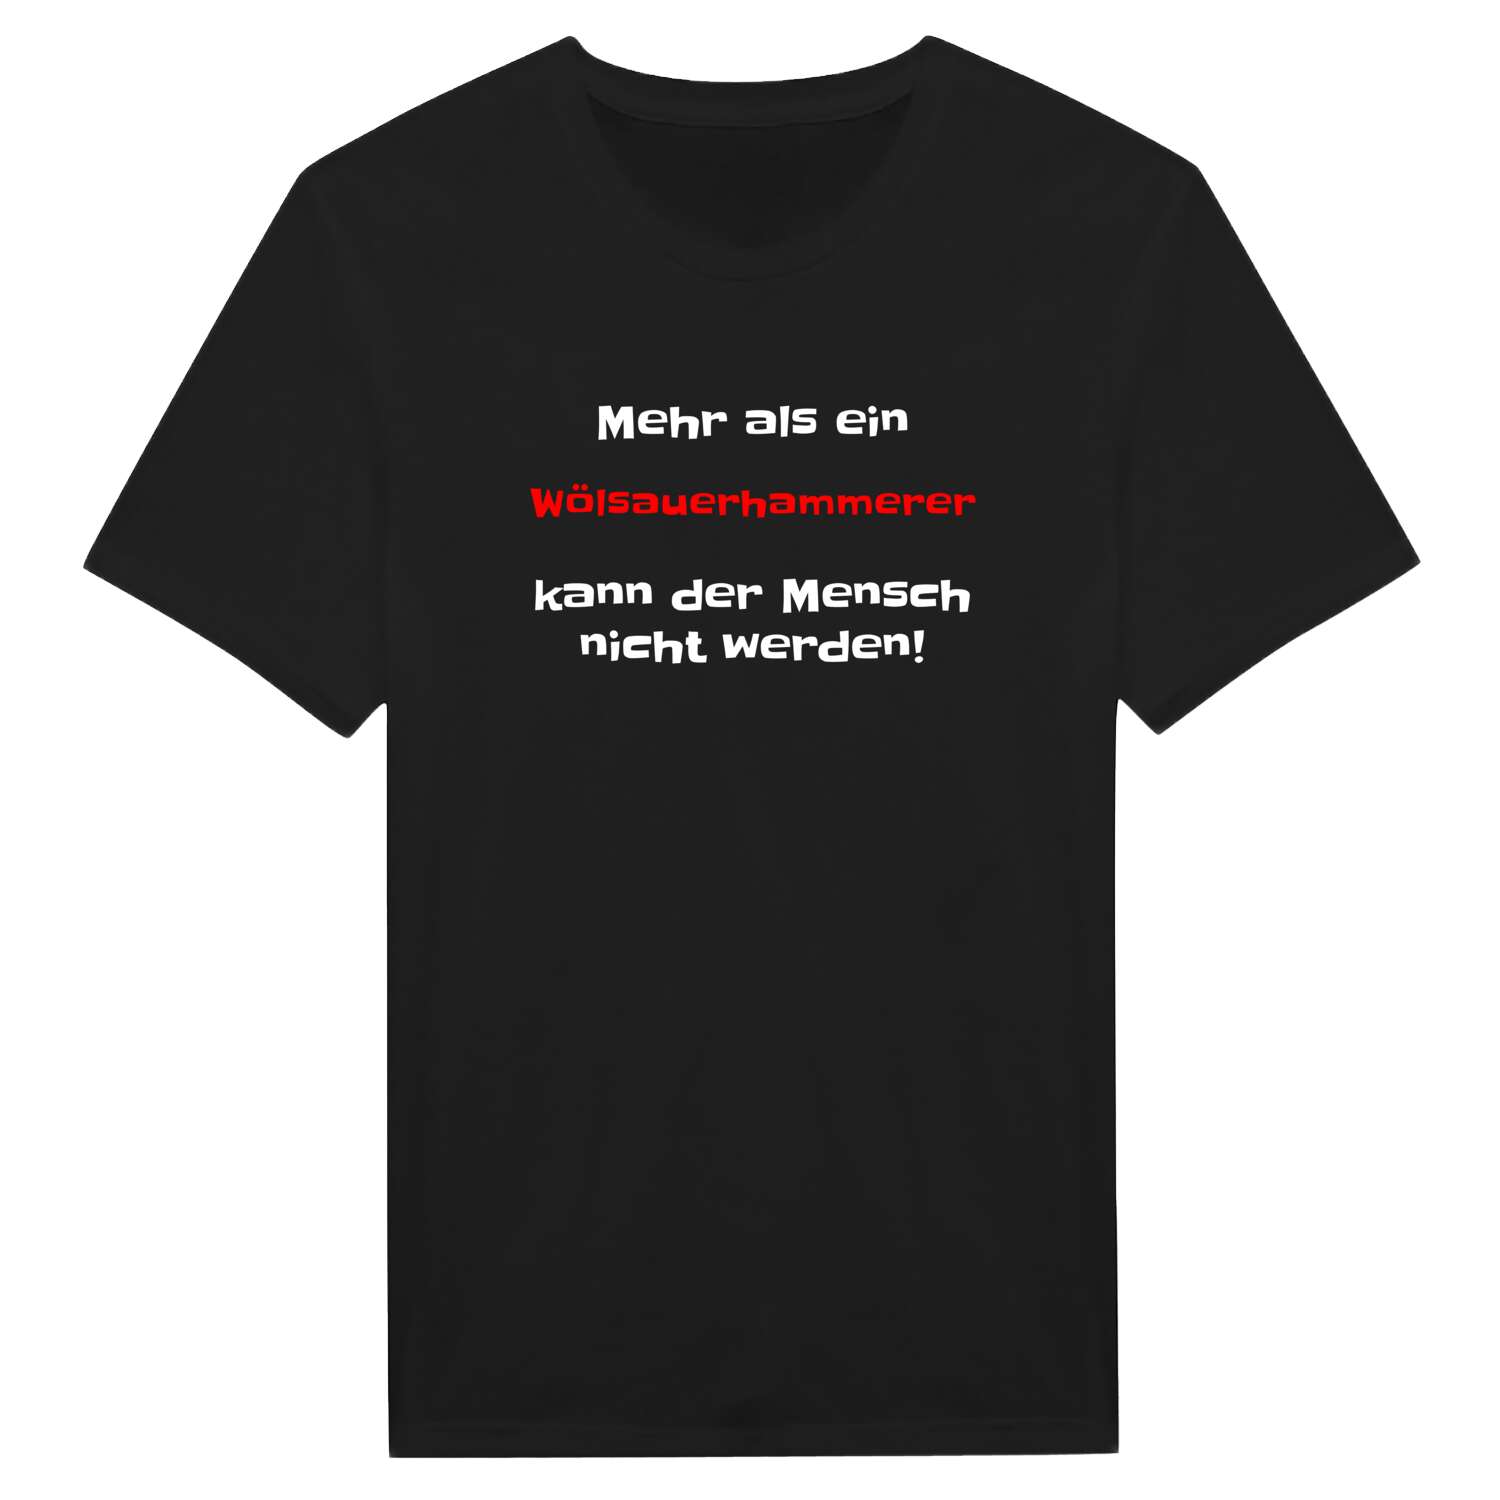 Wölsauerhammer T-Shirt »Mehr als ein«